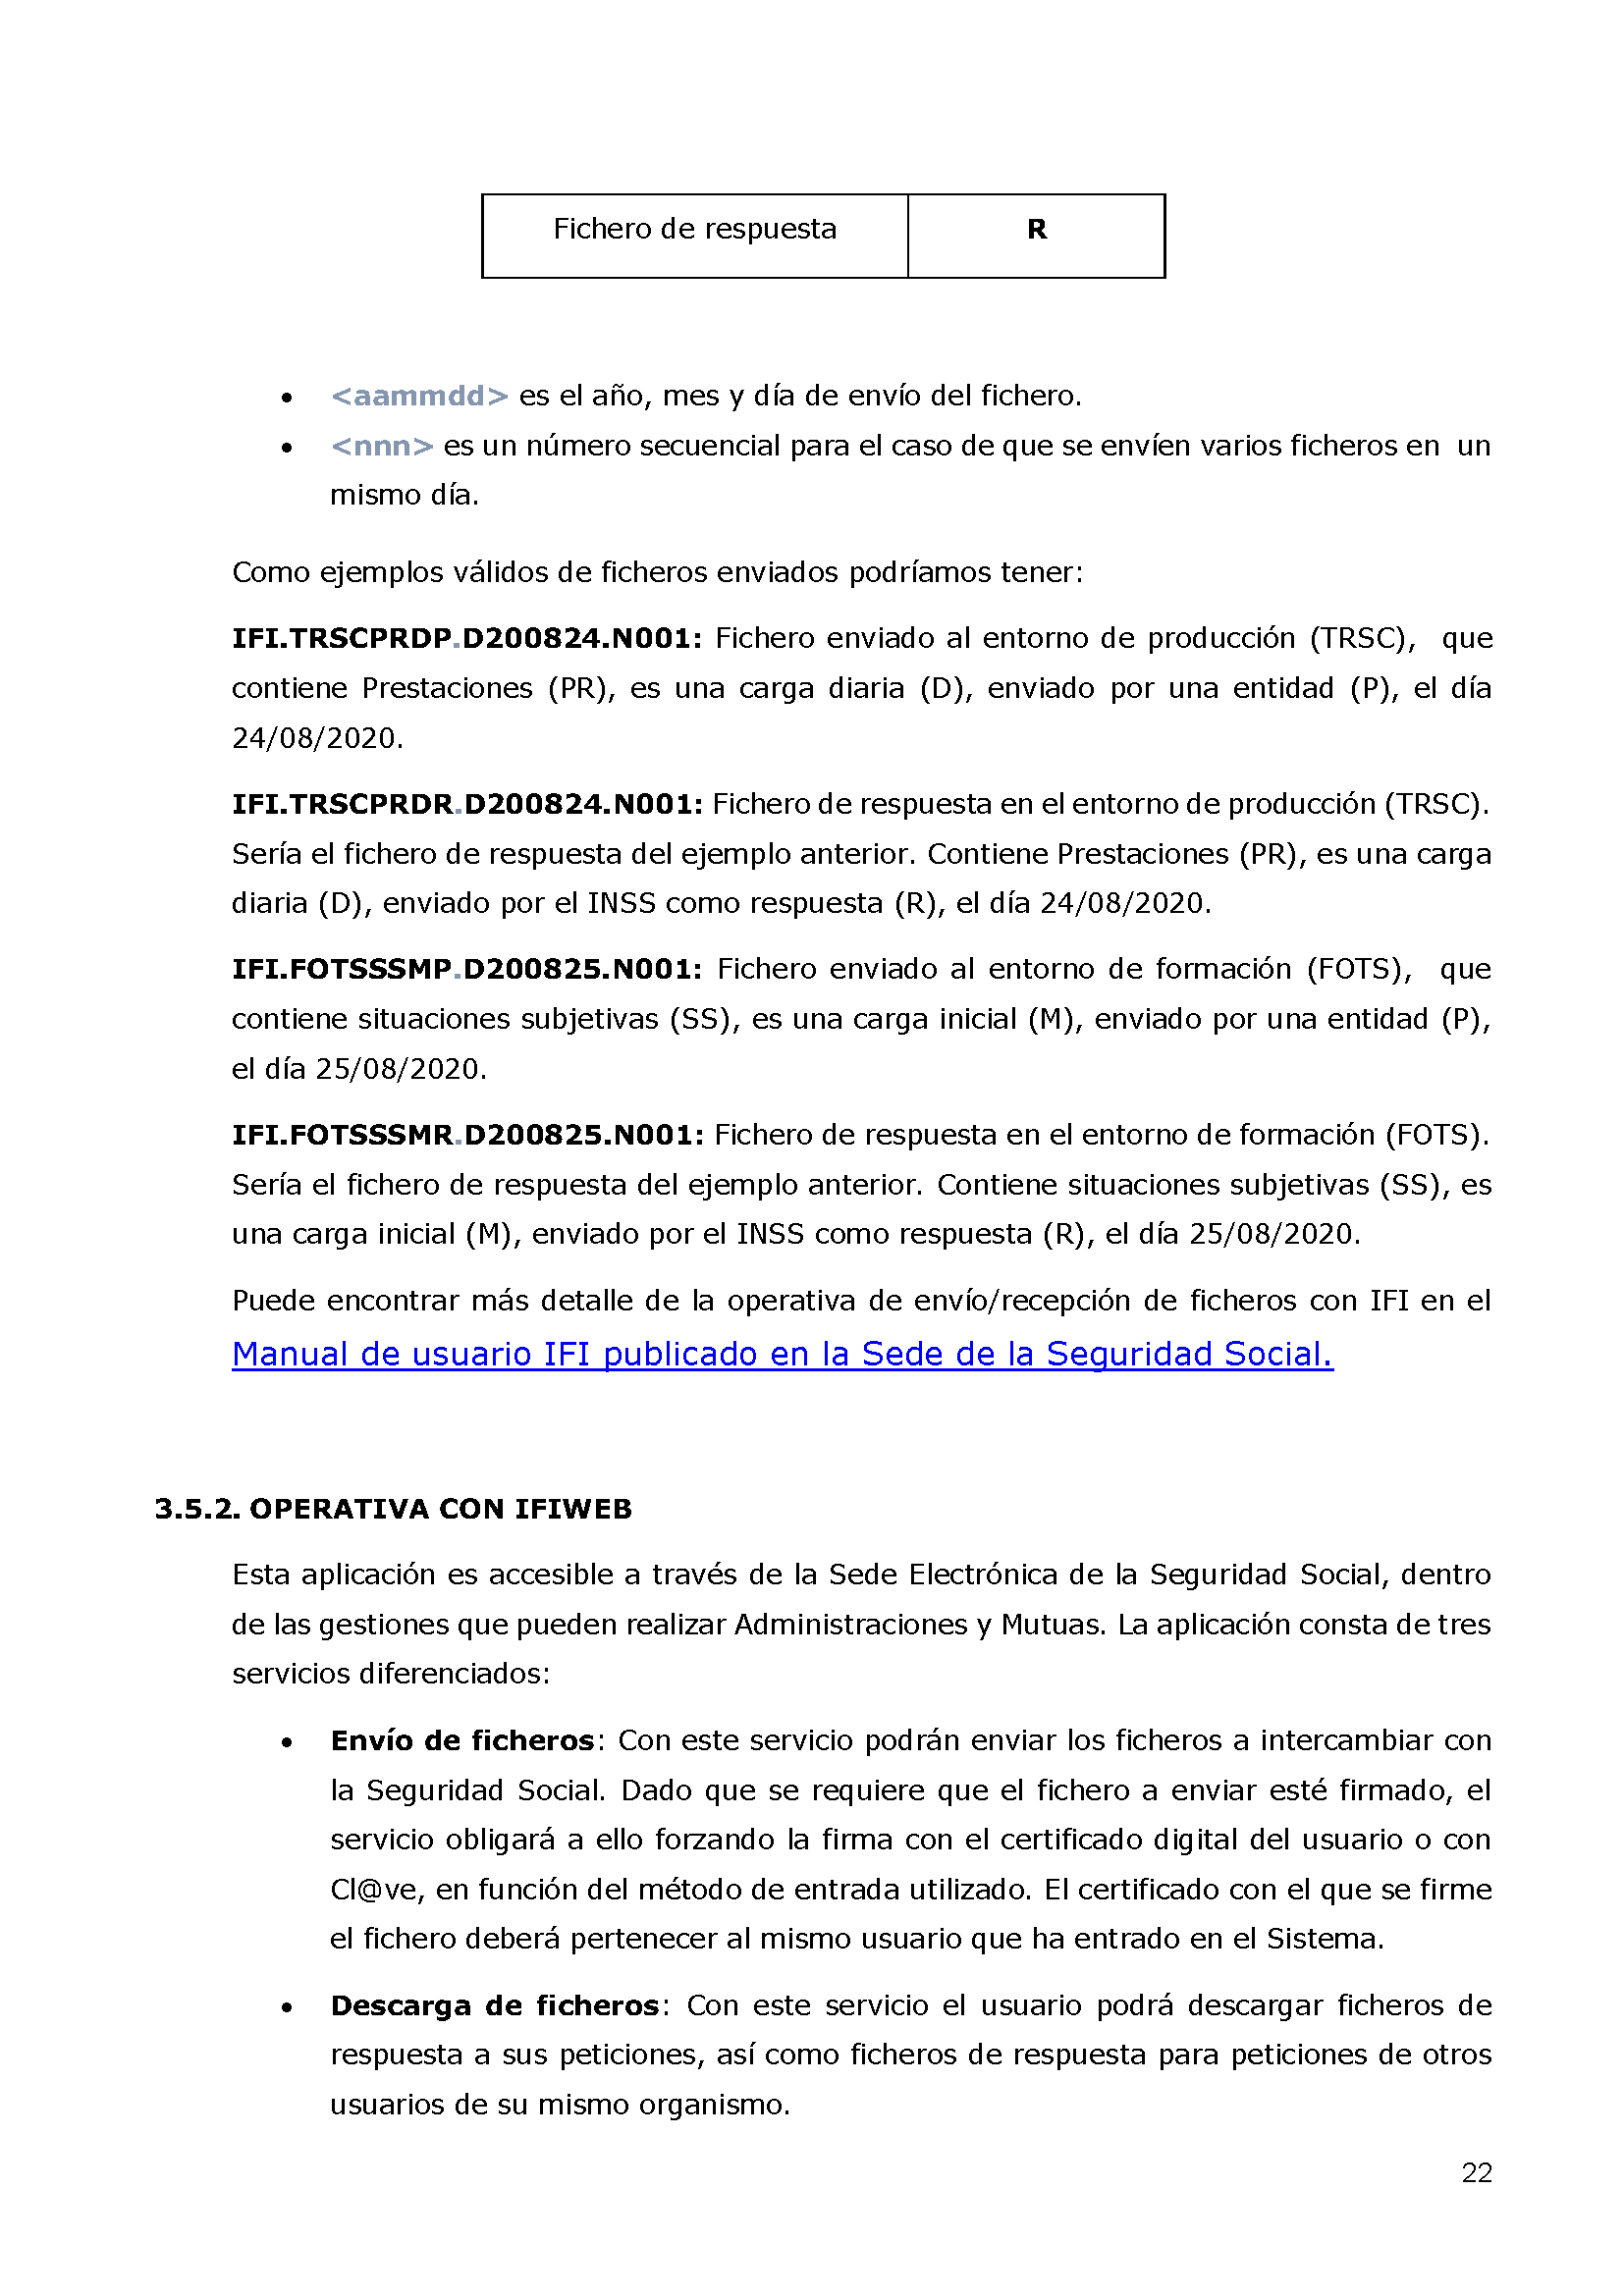 ANEXOS PROTOCOLO DE INTERCAMBIO DE FICHEROS PARA LA CARGA DE DATOS EN TARJETA SOCIAL DIGITAL Pag 22